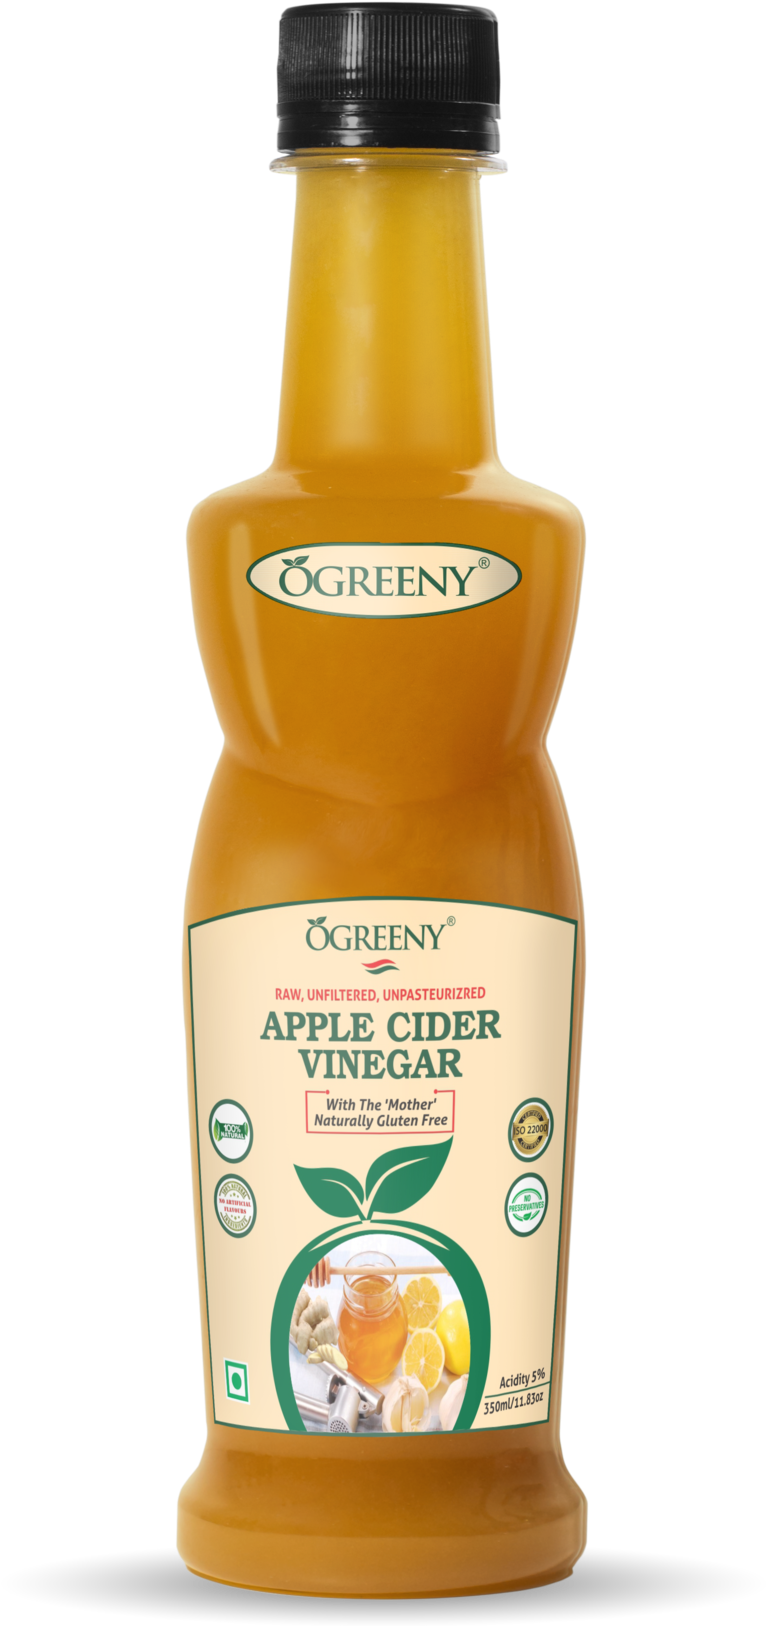 A Bottle Of Apple Cider Vinegar